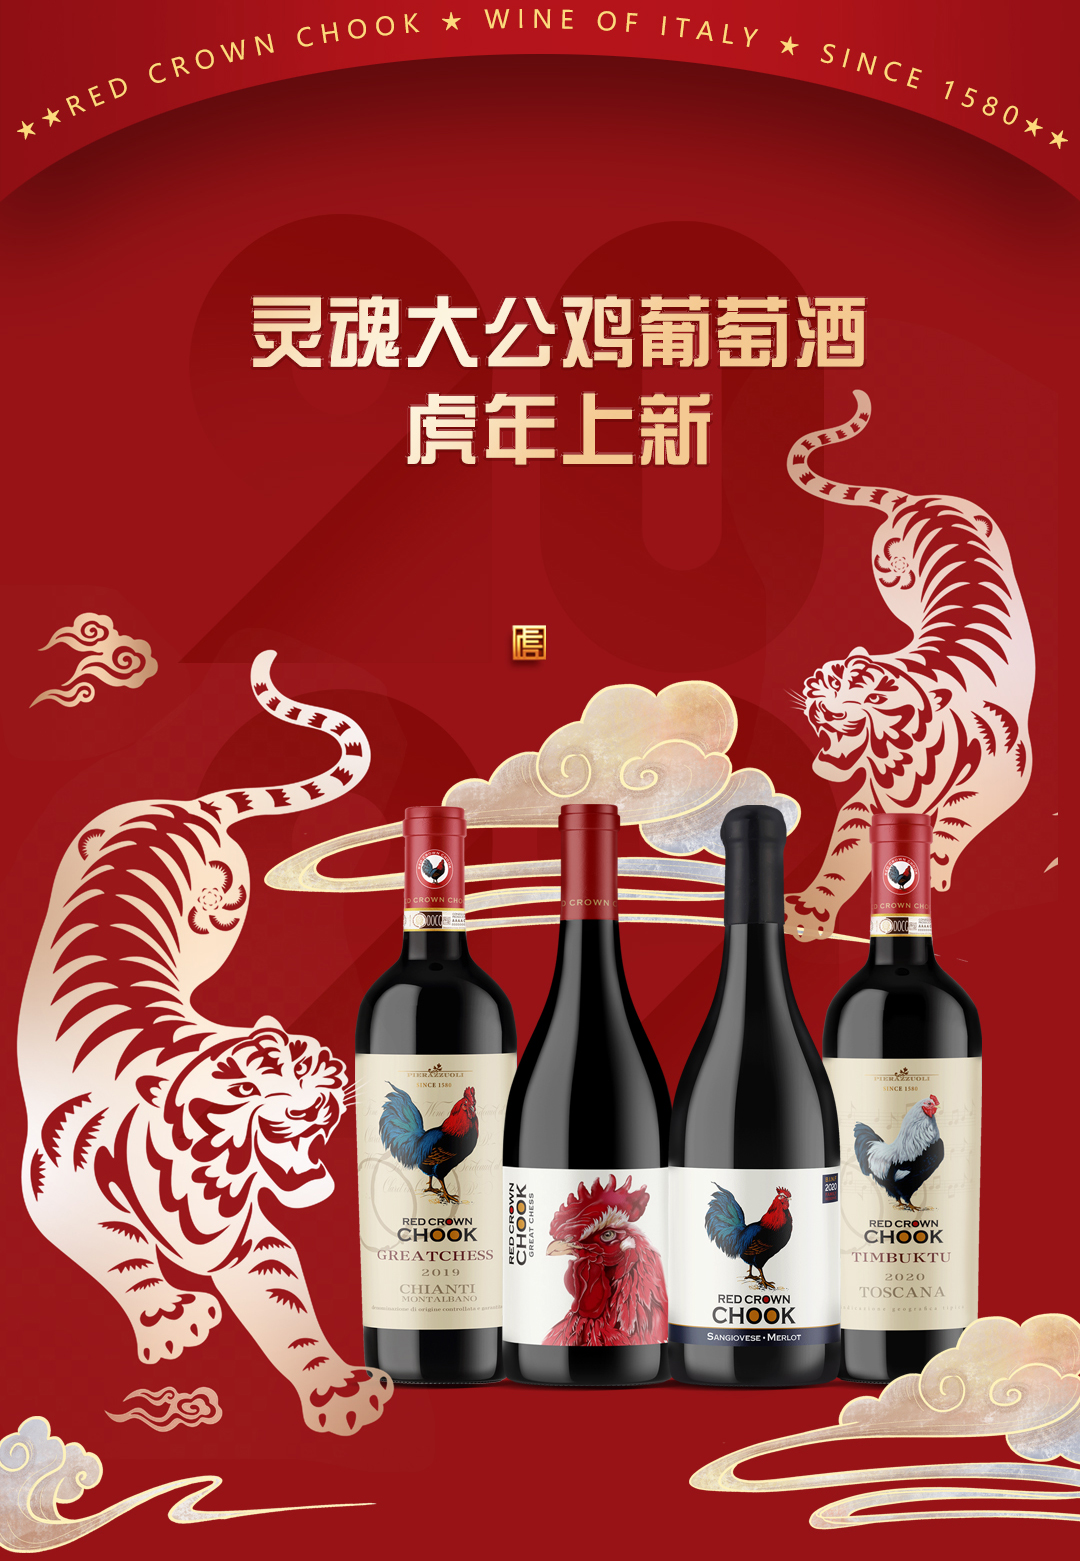 中国人过年为什么一定要喝灵魂大公鸡葡萄酒?